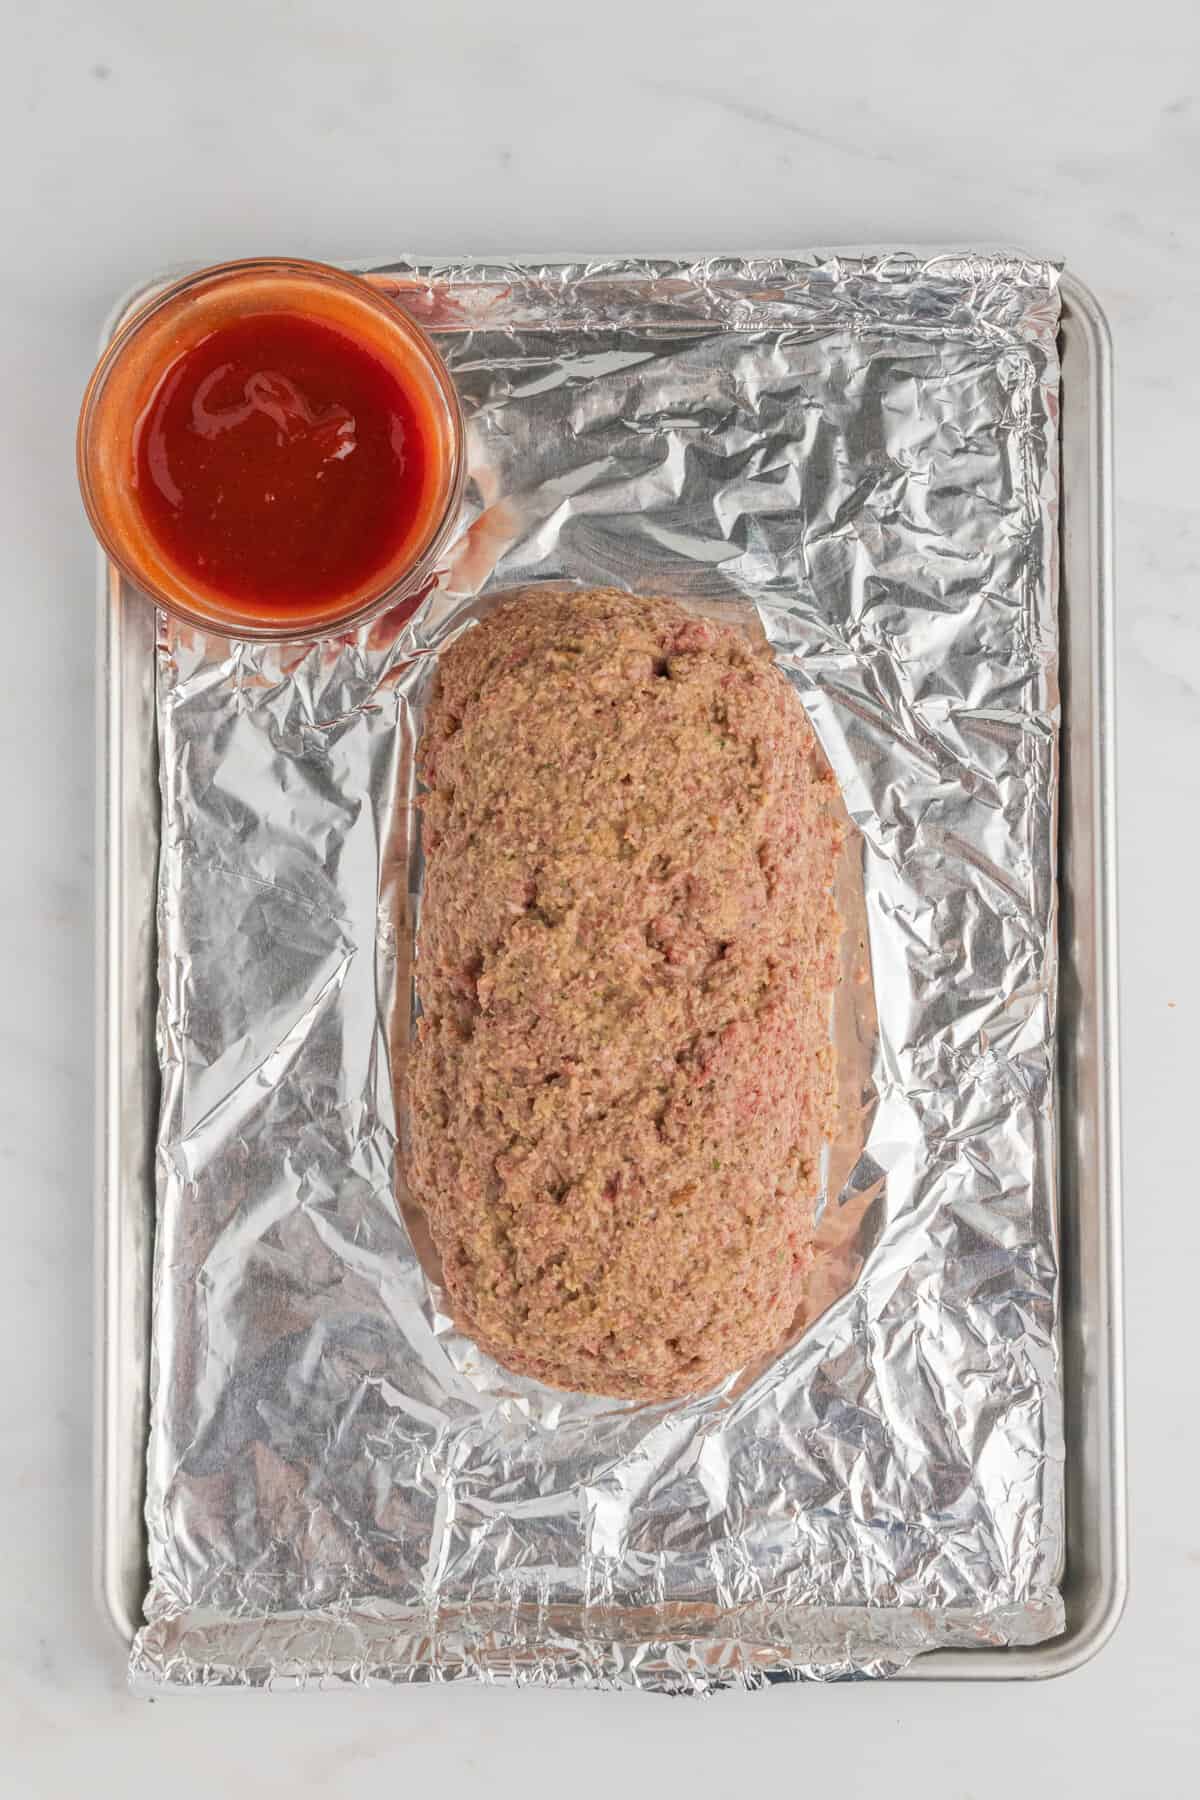 Meatloaf formed into loaf shape on foil lined baking sheet with a bowl of glaze beside it.